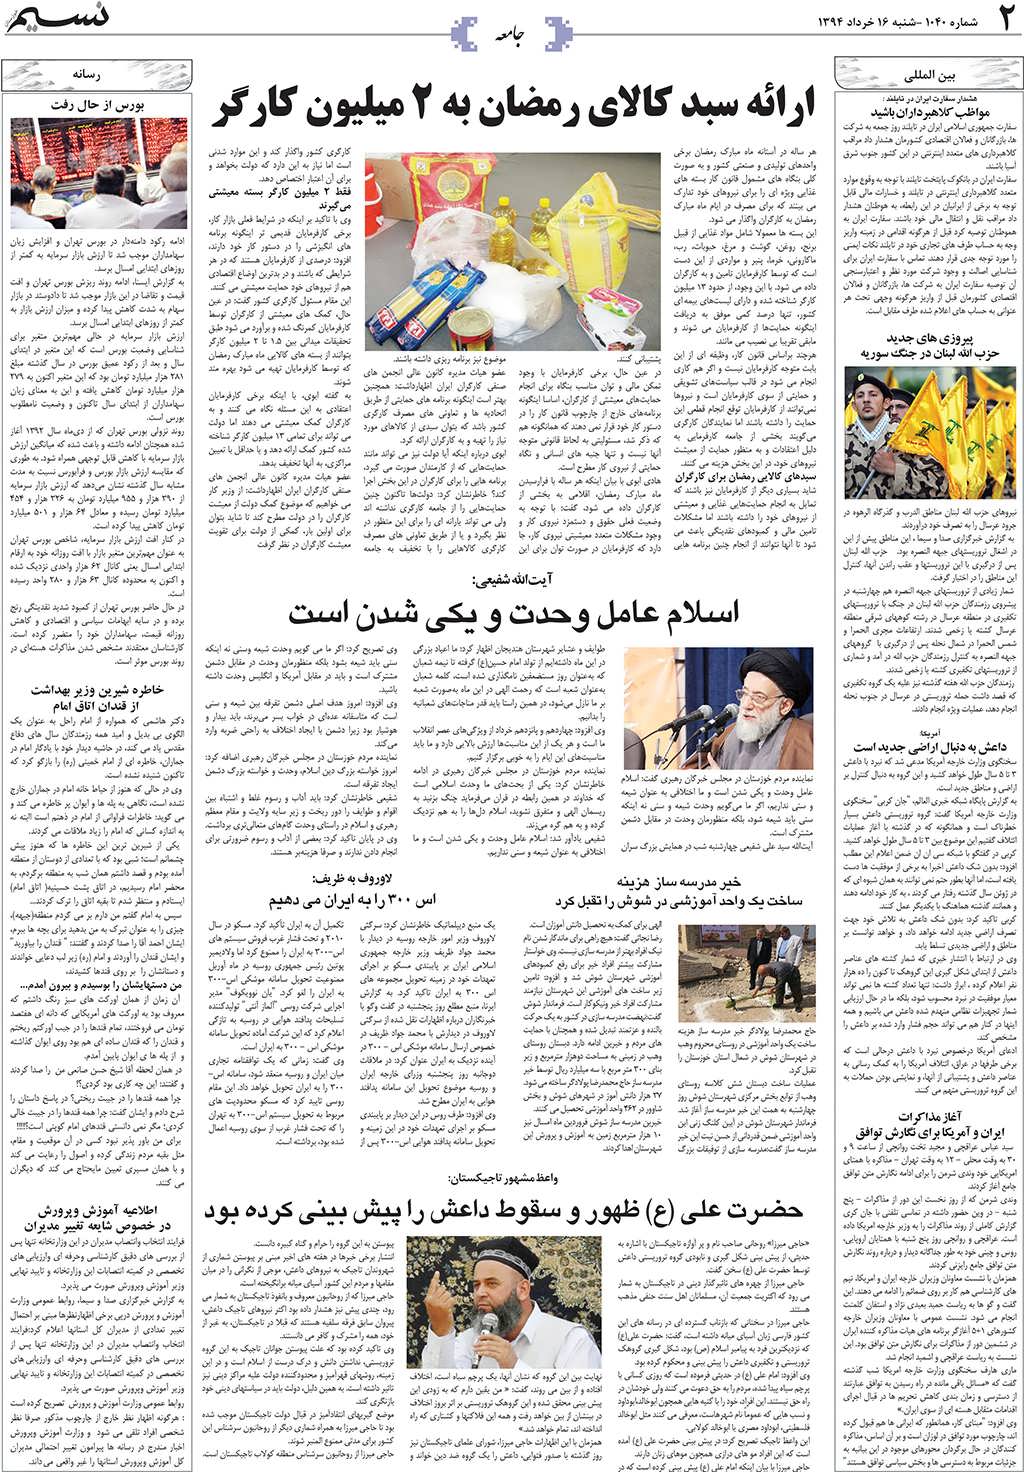 صفحه جامعه روزنامه نسیم شماره 1040